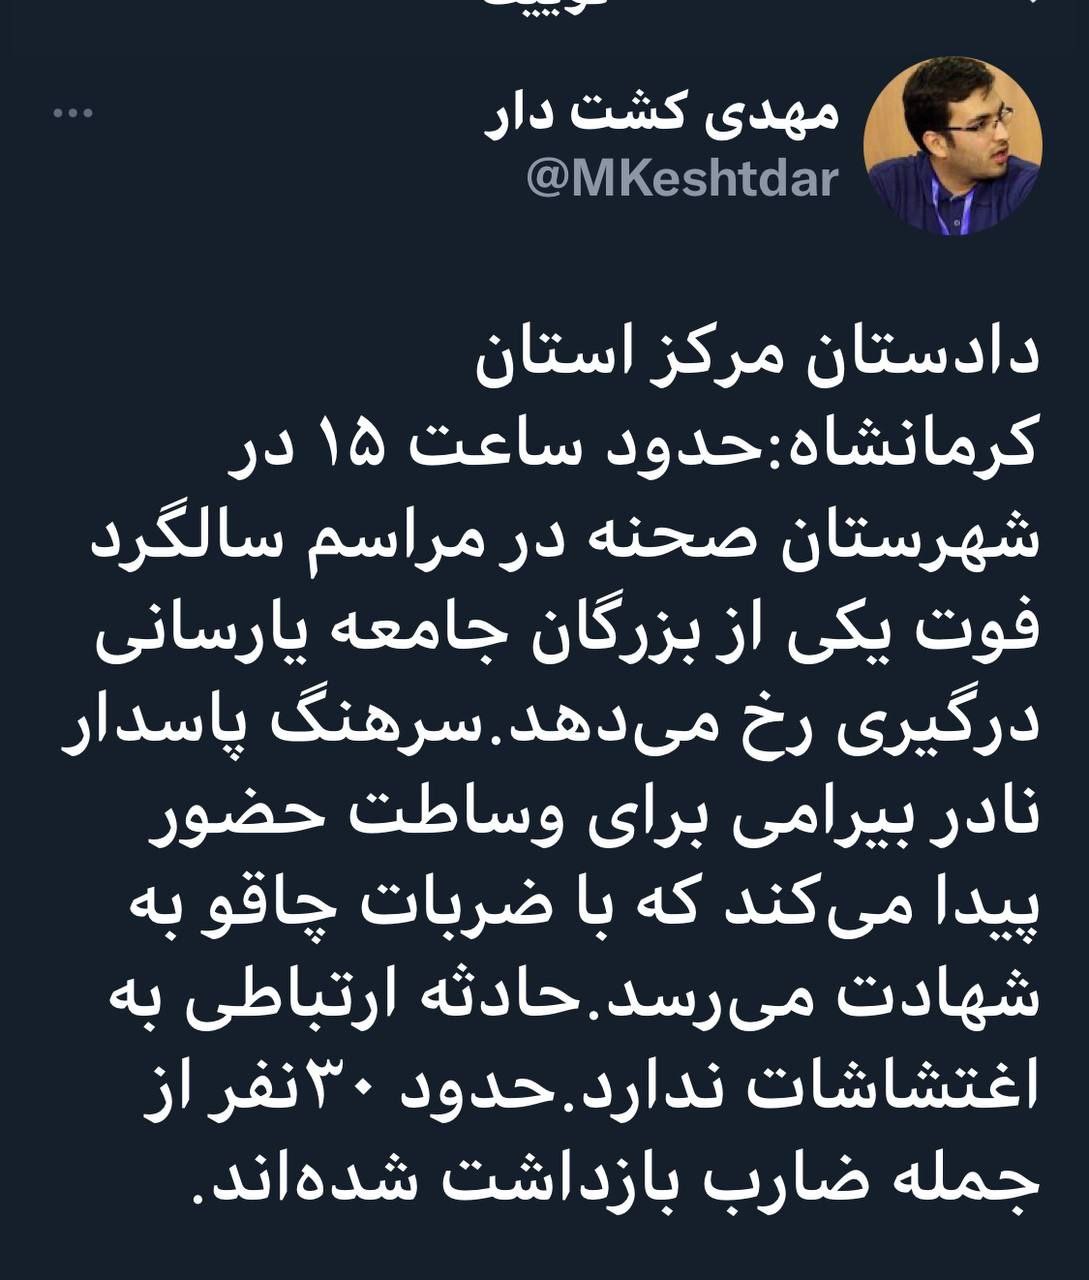 ايرنا: سرهنگ نادر بيرامي مسئول اطلاعات سپاه صحنه کرمانشاه به شهادت رسيد